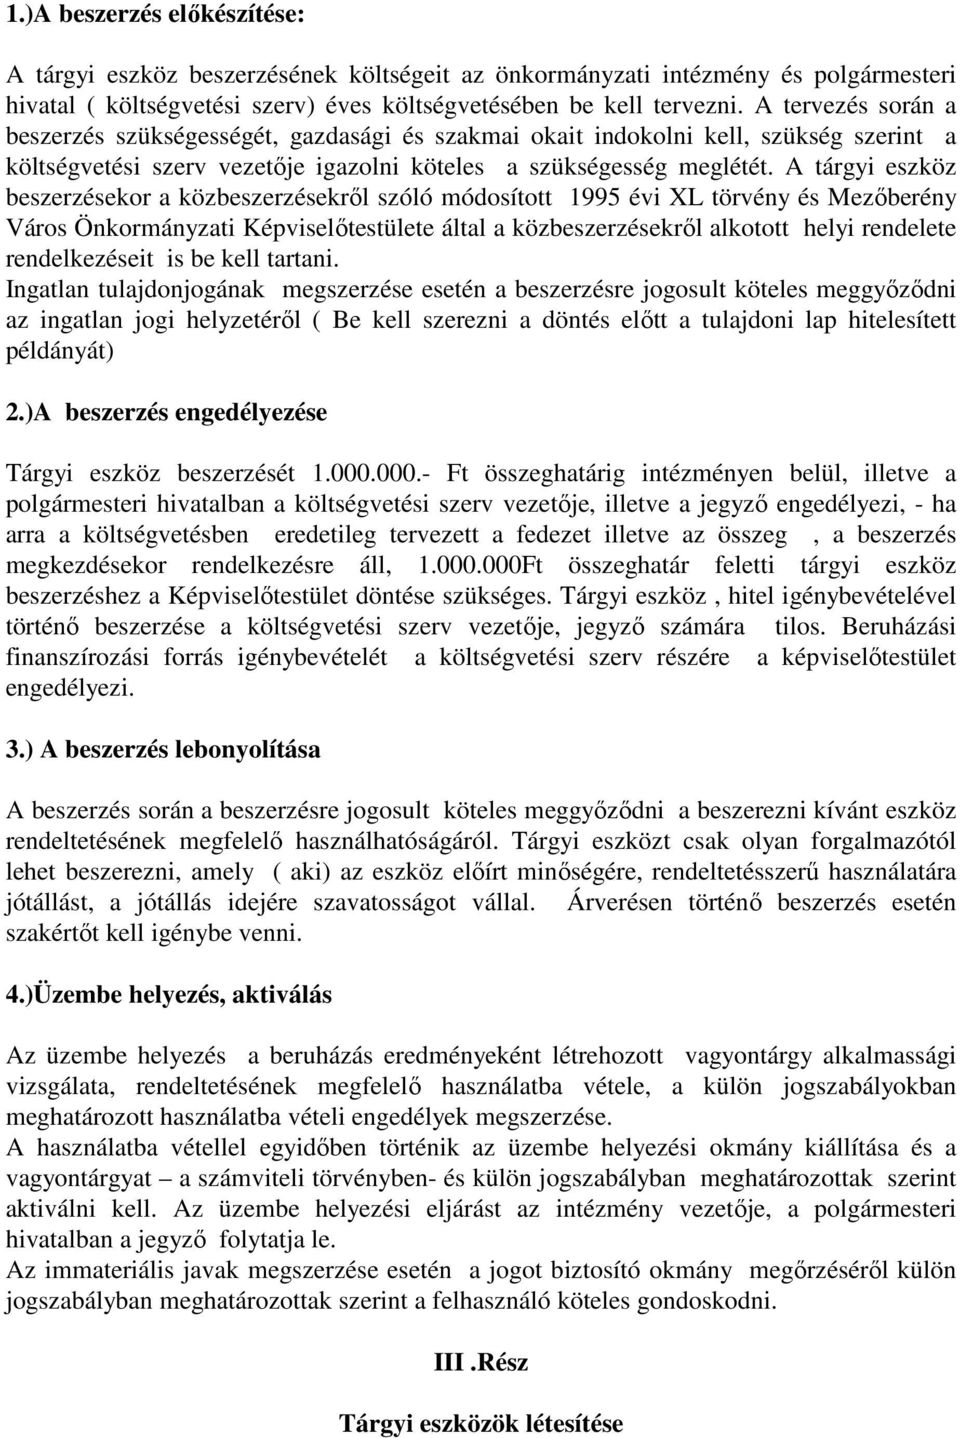 A tárgyi eszköz beszerzésekor a közbeszerzésekrıl szóló módosított 1995 évi XL törvény és Mezıberény Város Önkormányzati Képviselıtestülete által a közbeszerzésekrıl alkotott helyi rendelete